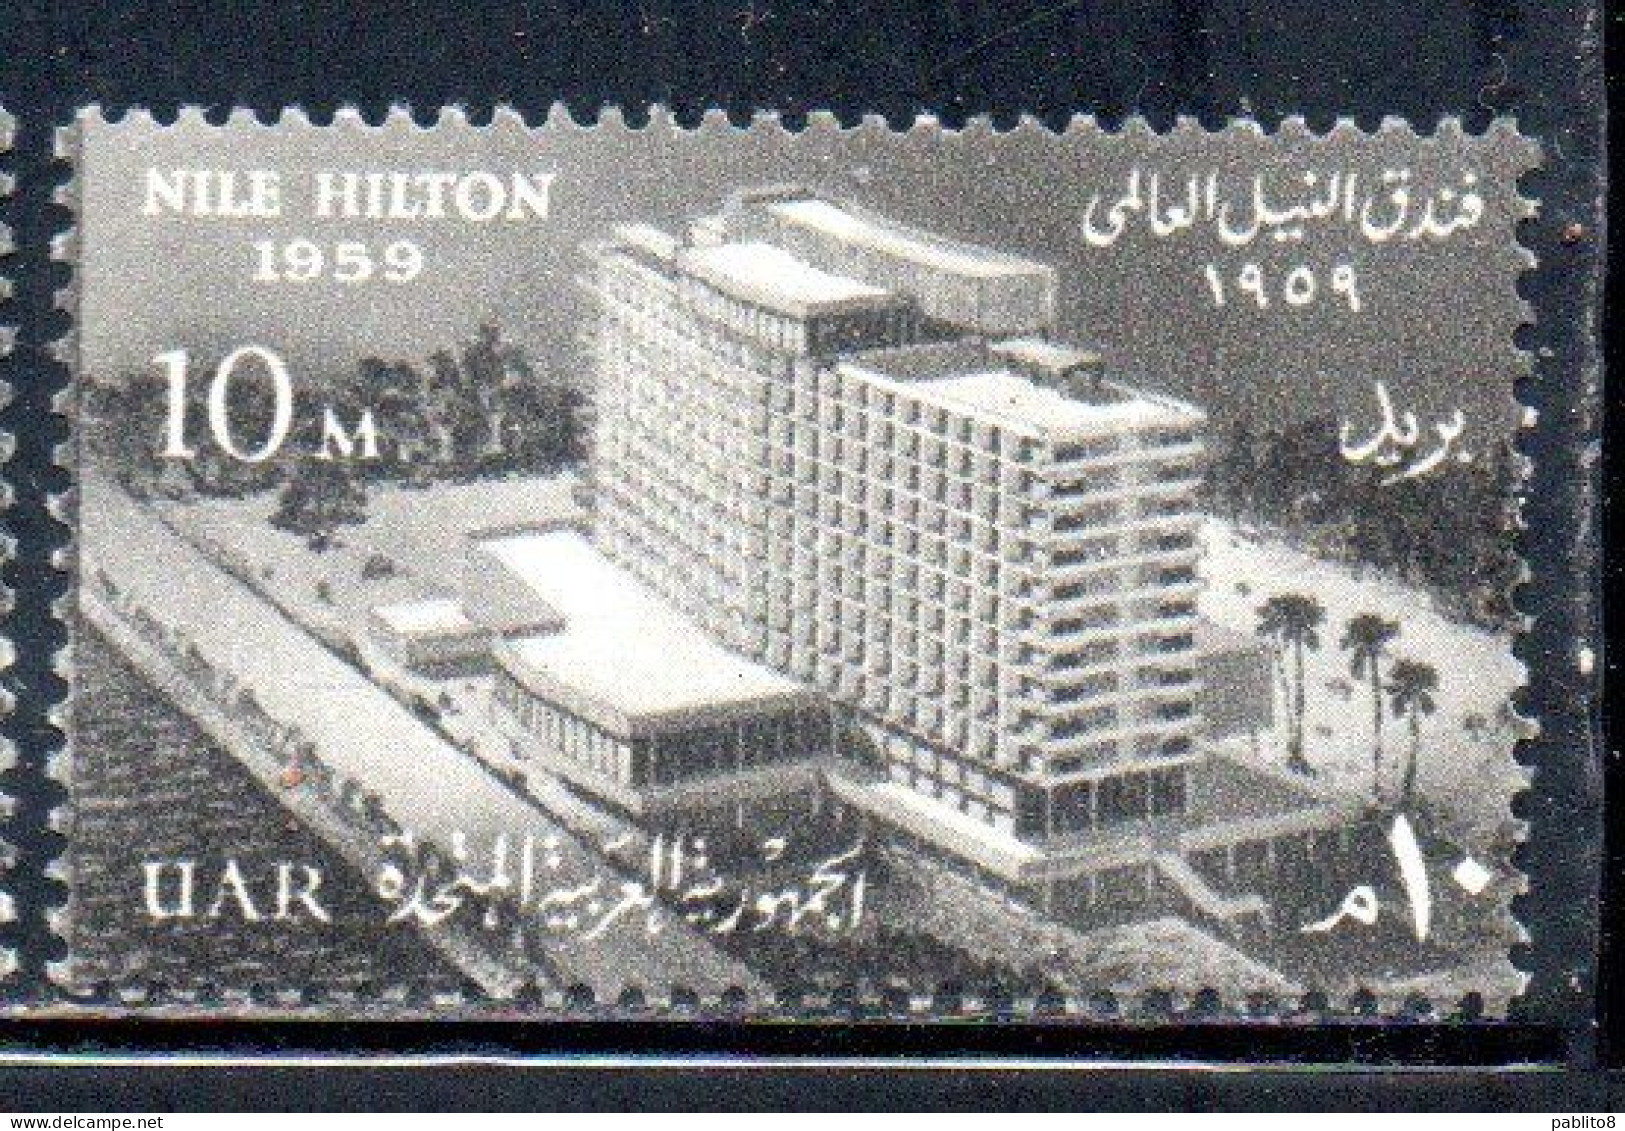 UAR EGYPT EGITTO 1959 OPENING OF THE NILE HILTON HOTEL CAIRO 10m MH - Nuovi